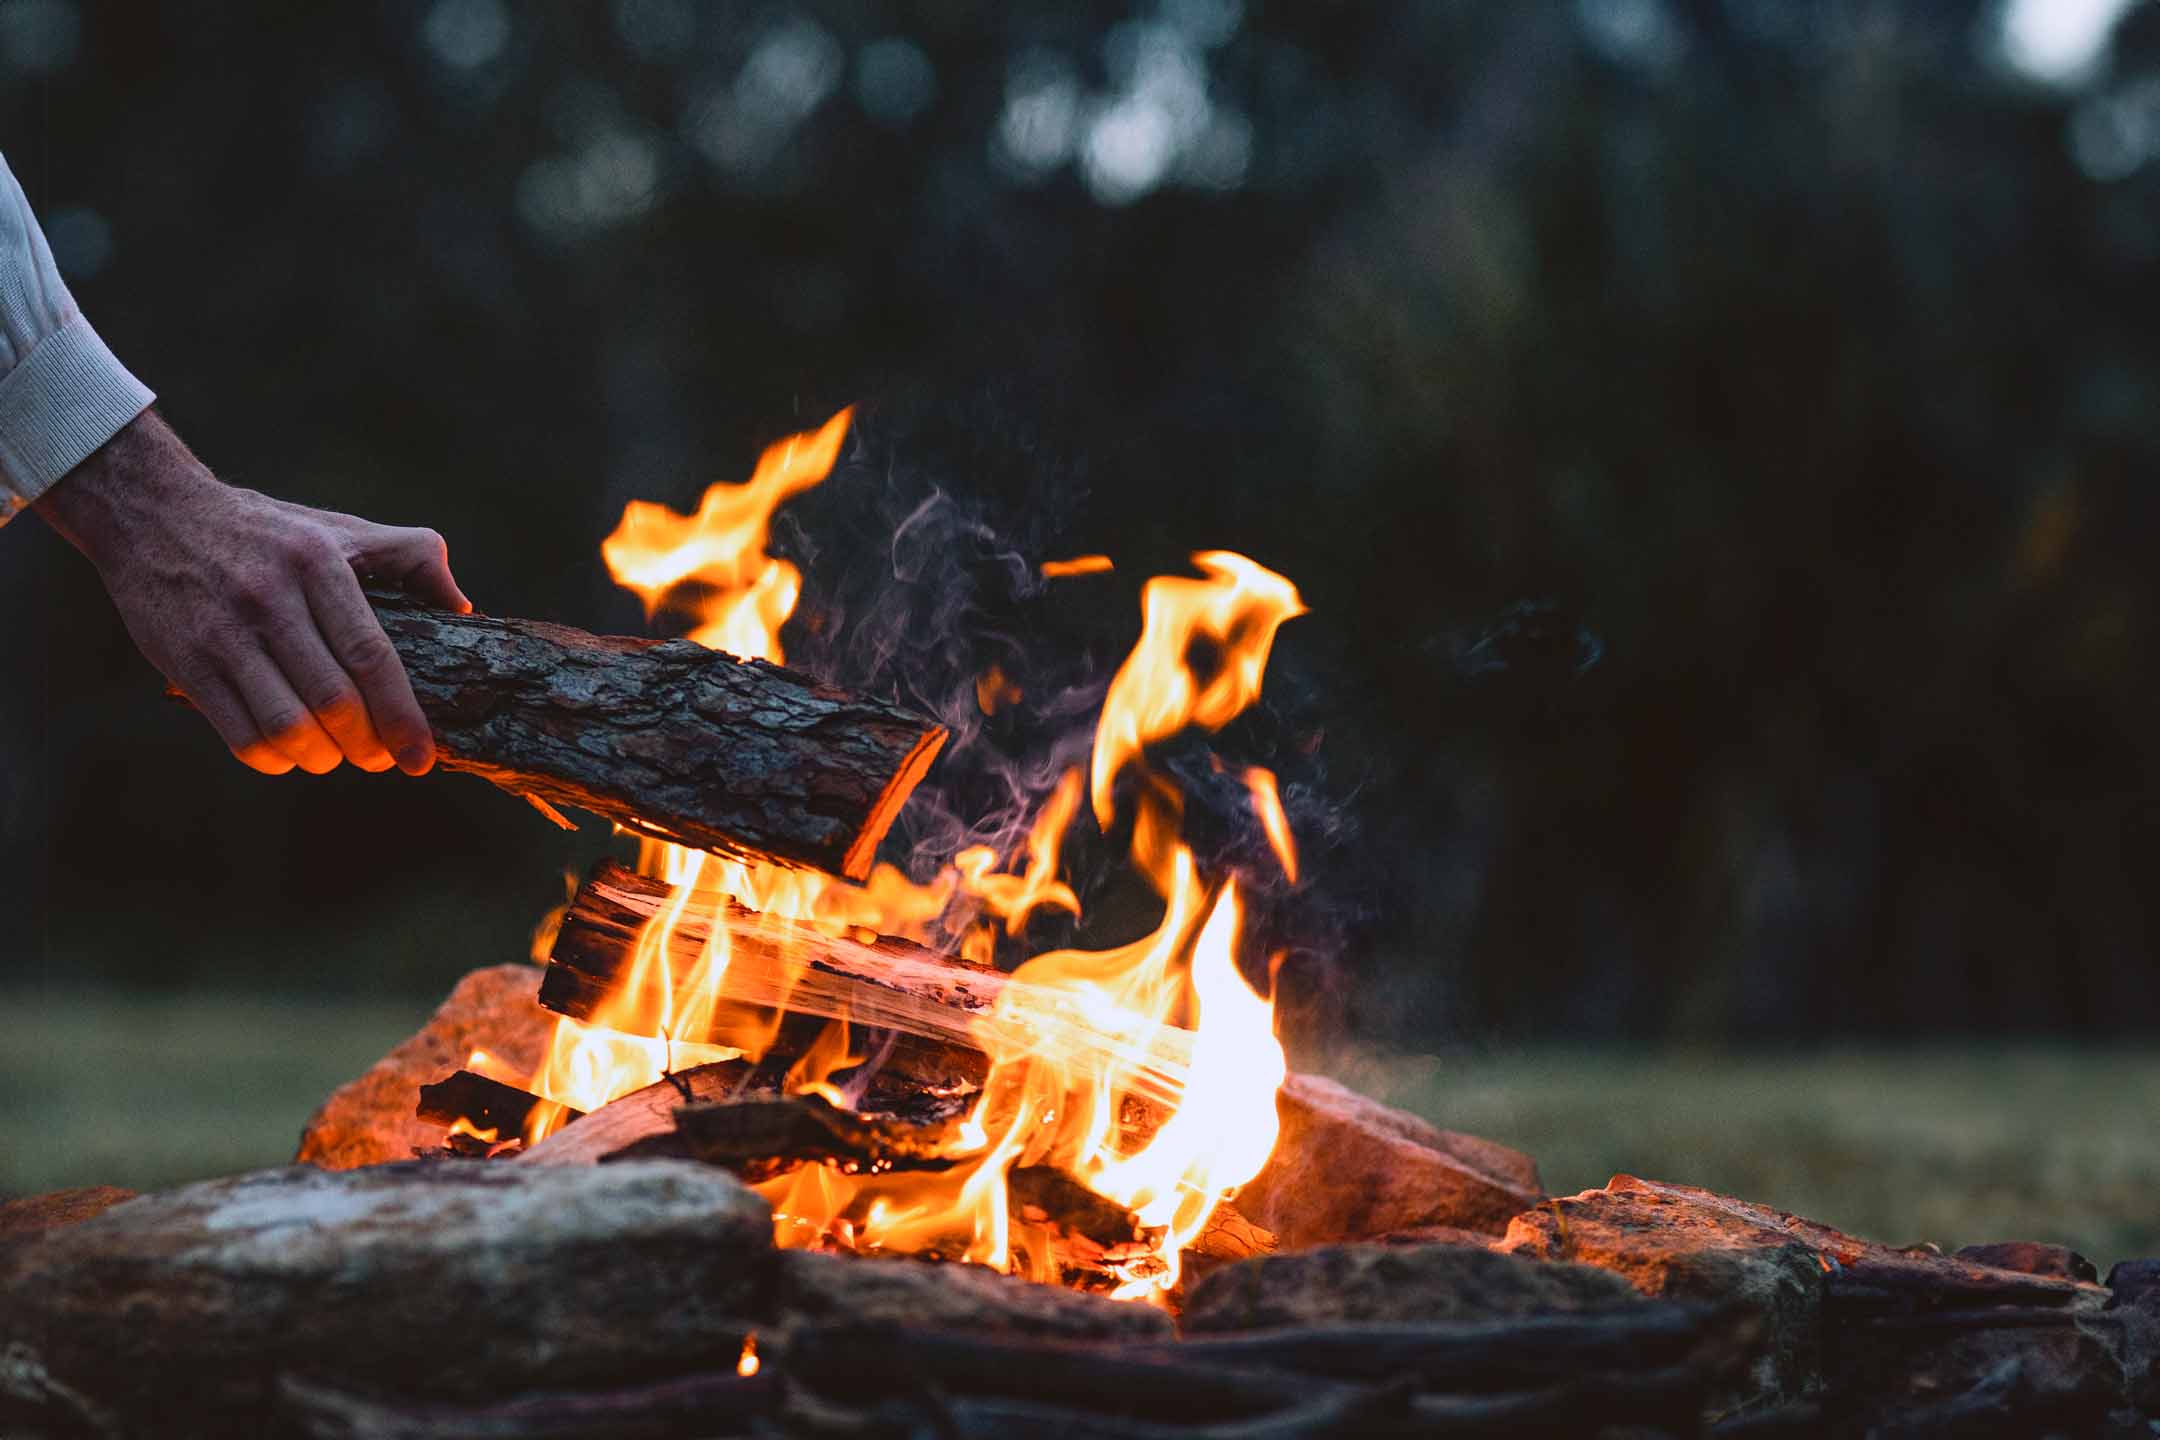 Brennholz wird in Feuer gelegt